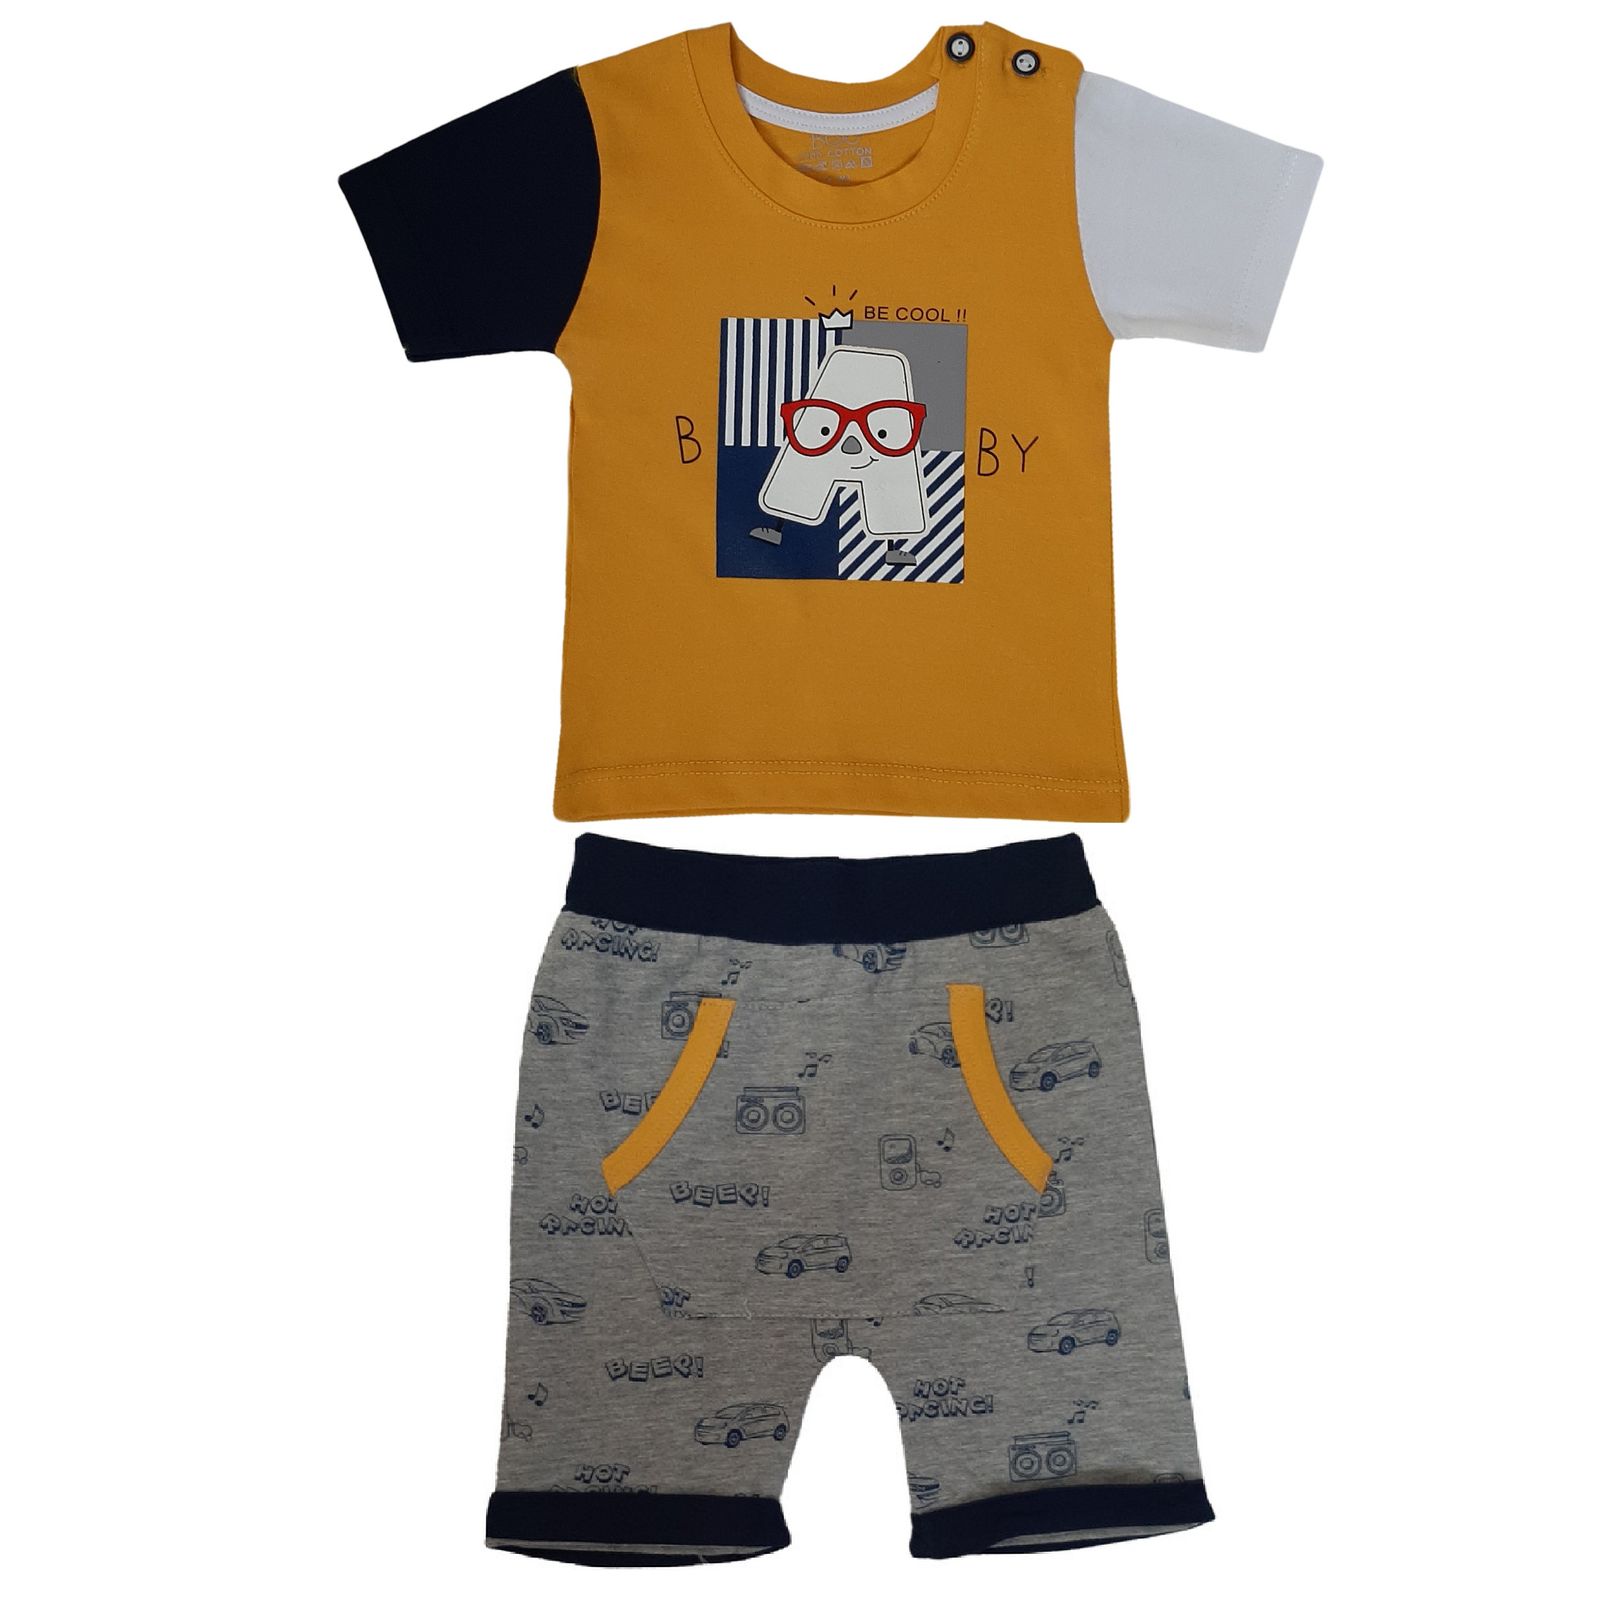 ست تی شرت و شلوارک نوزادی بیبی بو طرح A مدل 4-9524 -  - 1